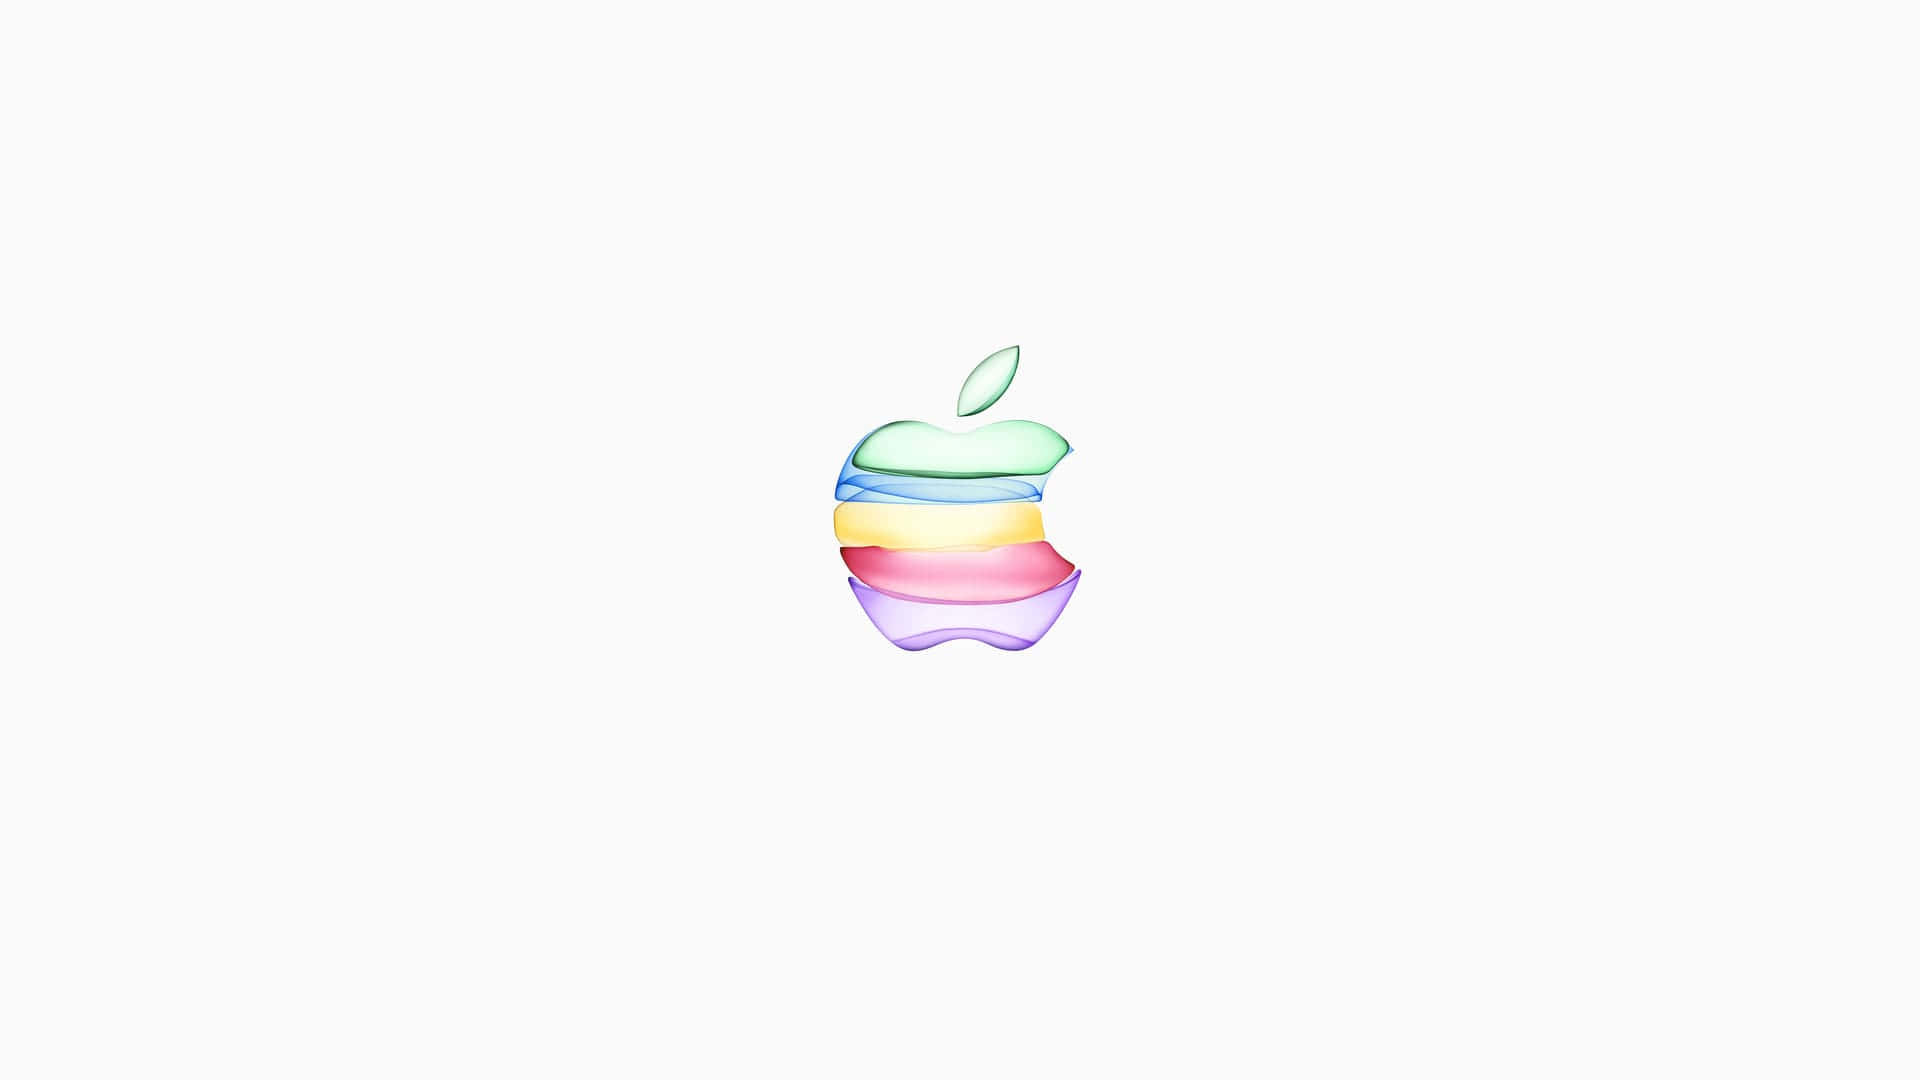 Logotipoda Apple Em 1920 X 1080 Como Plano De Fundo.